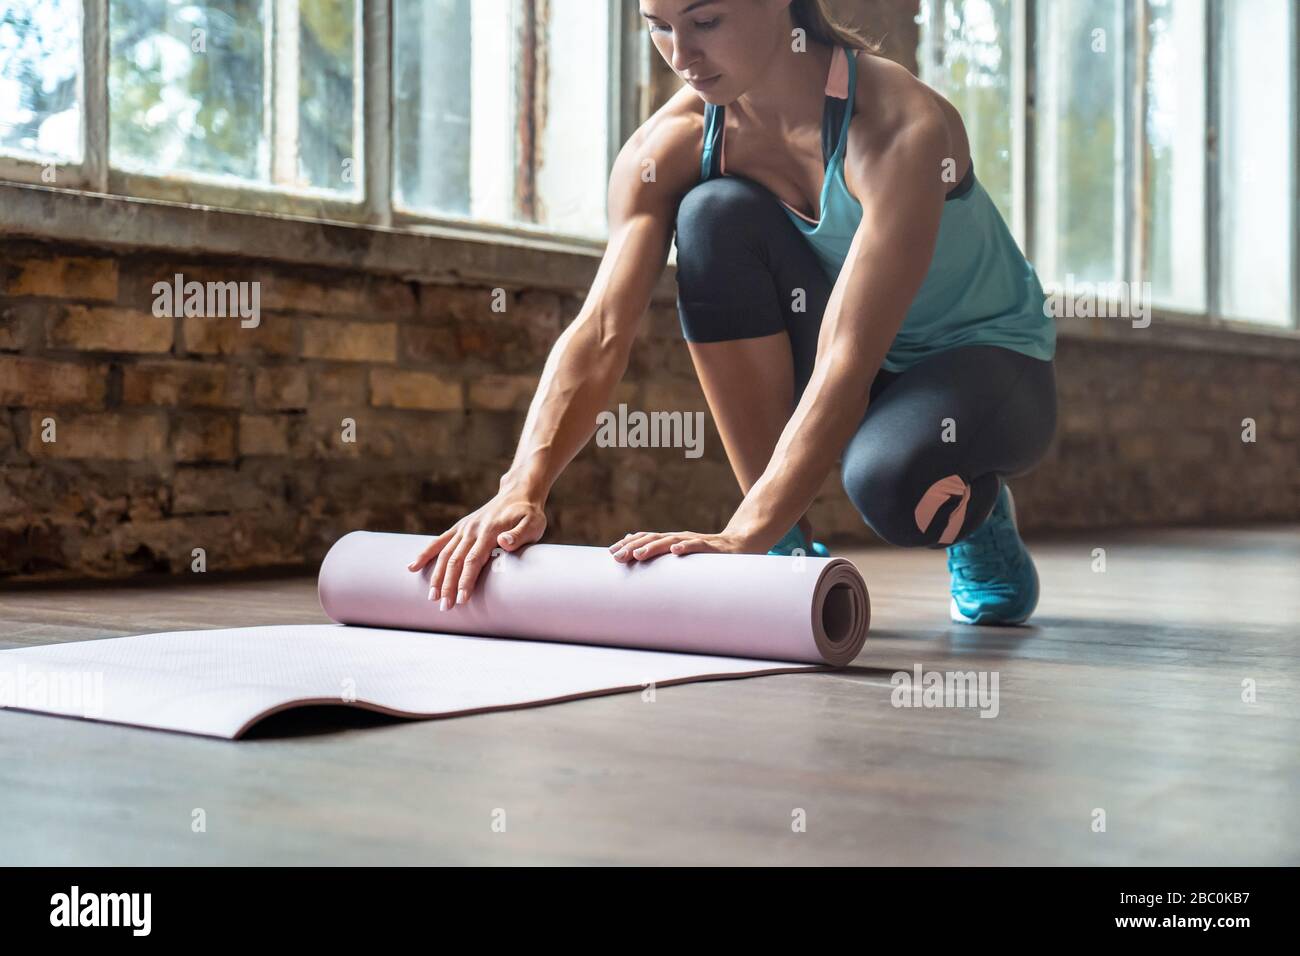 Ajuste deportivo mujer instructor de yoga llevar ropa deportiva rodillo desenrollar colchoneta de yoga en el gimnasio. Foto de stock